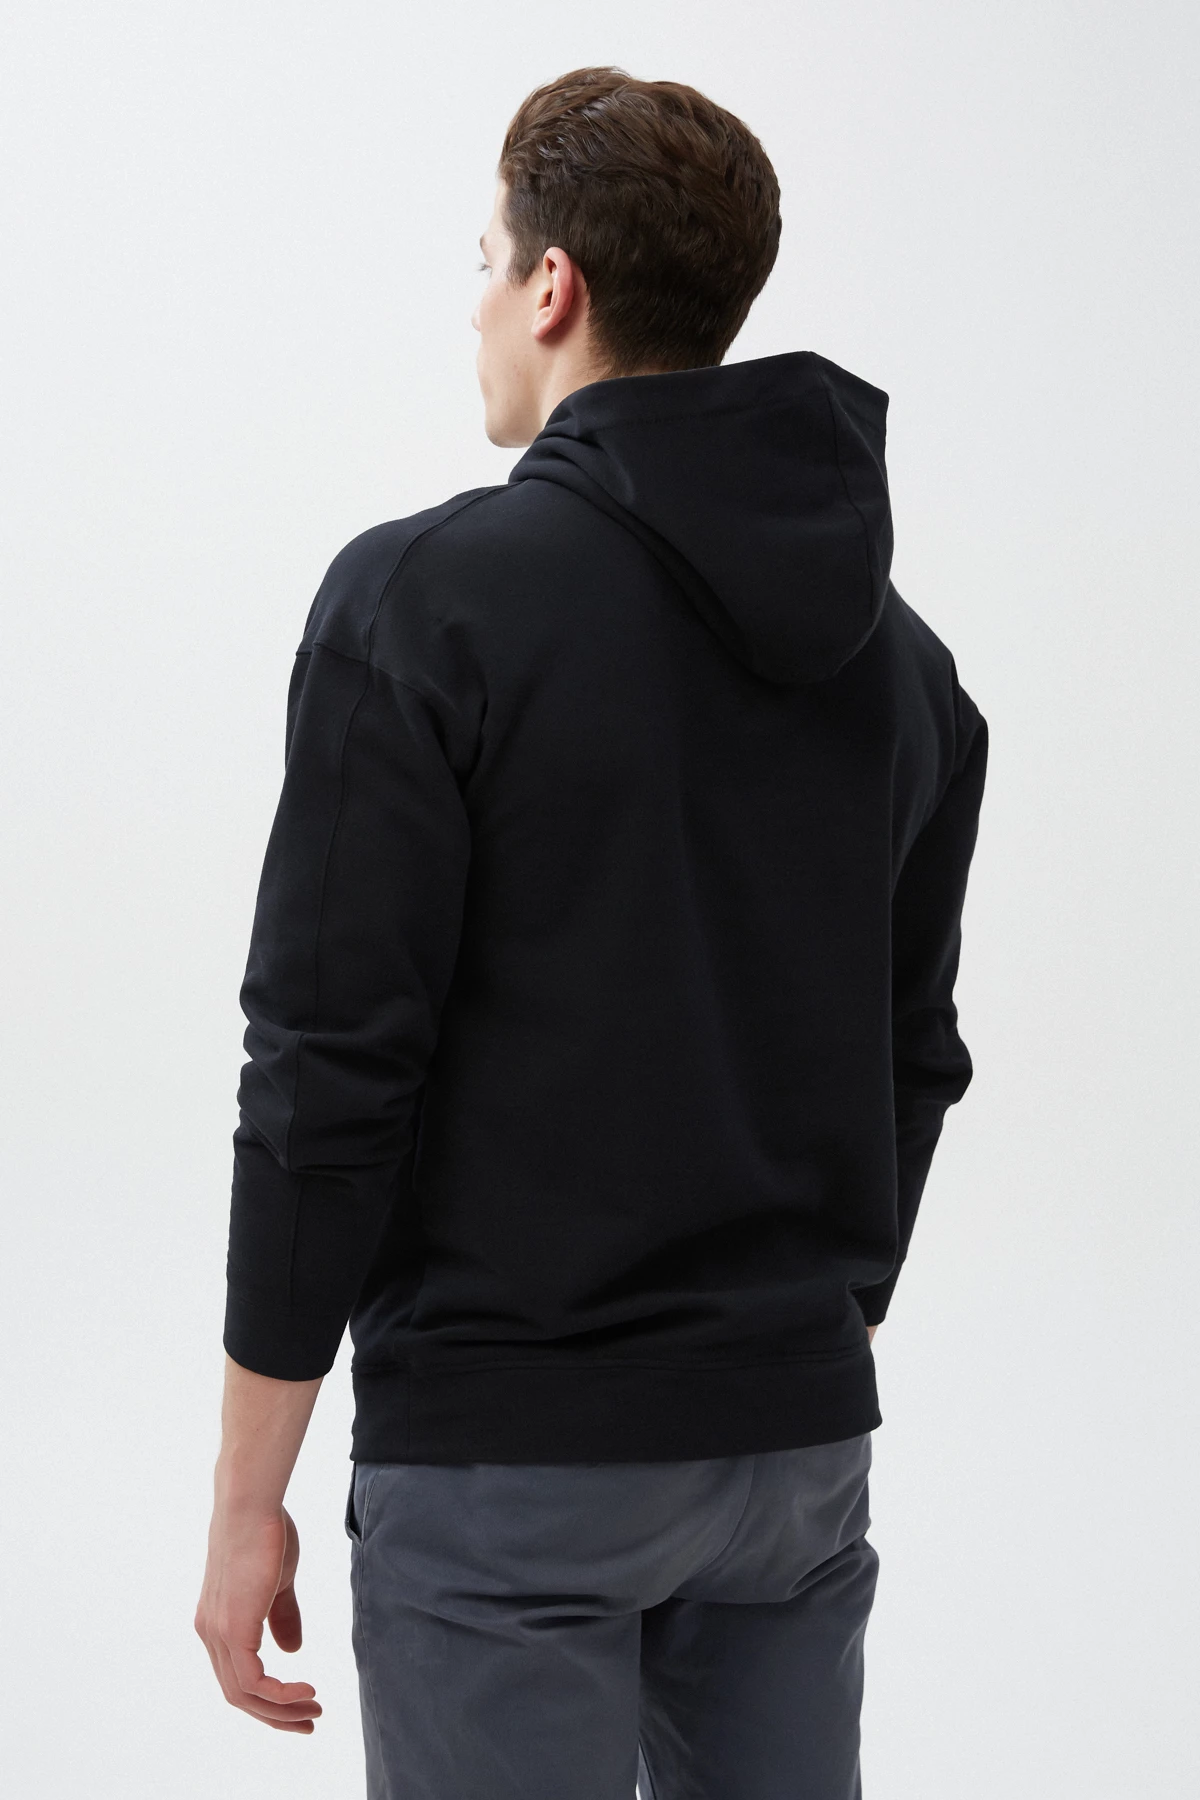 Black unisex hoodie "Holiday feeling" on fleece, photo 3